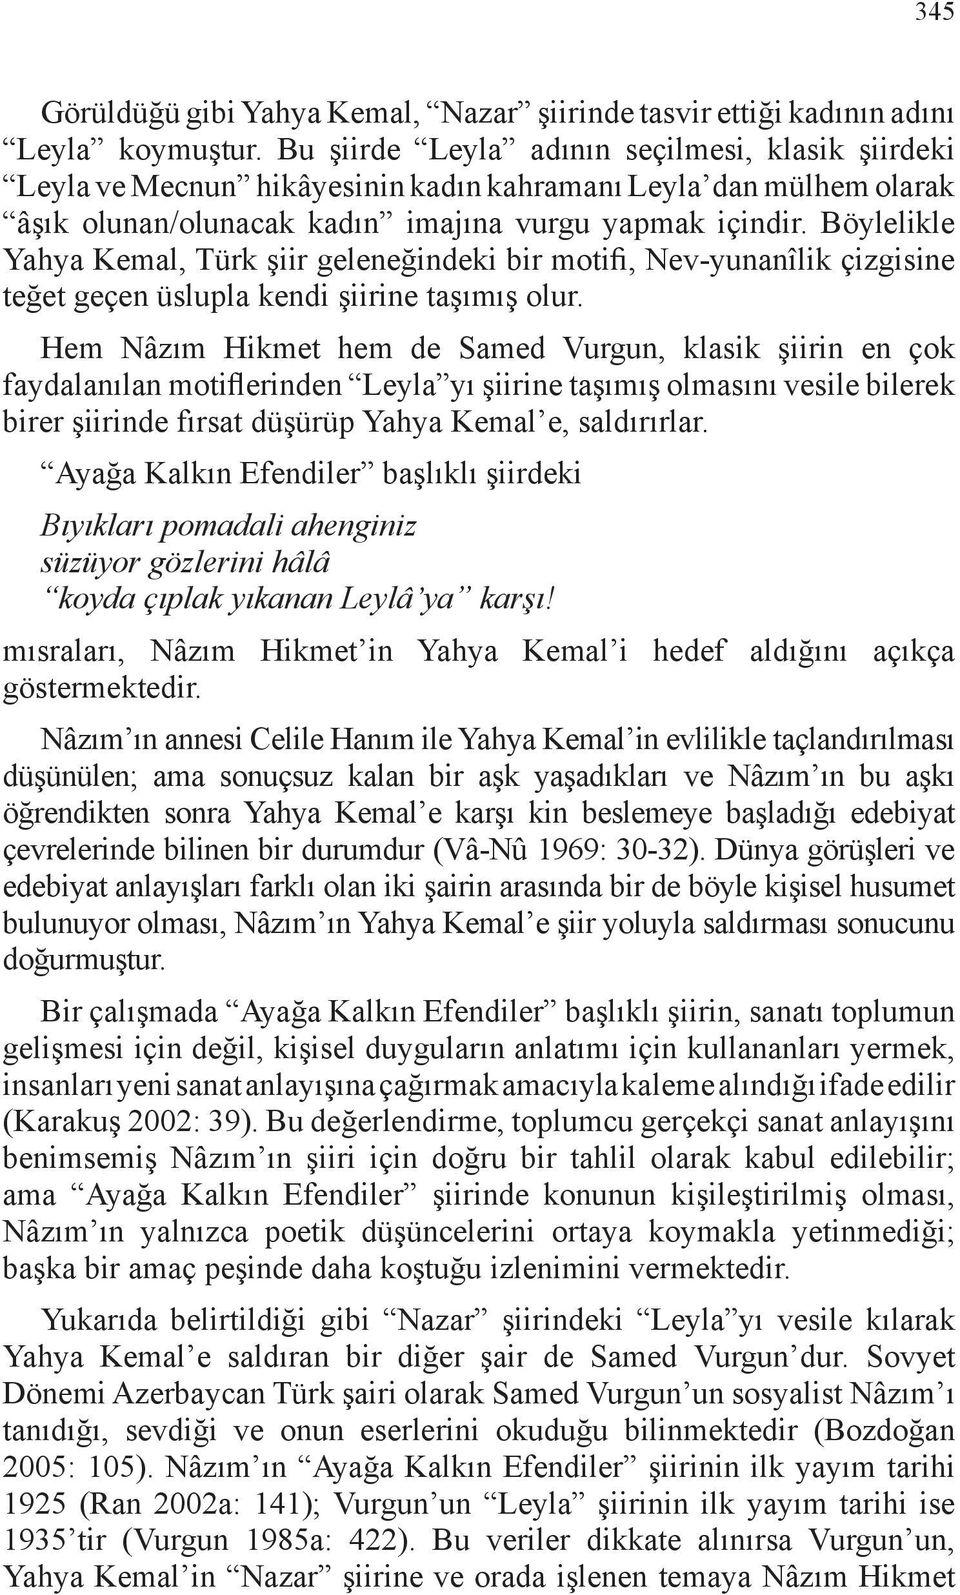 Böylelikle Yahya Kemal, Türk şiir geleneğindeki bir motifi, Nev-yunanîlik çizgisine teğet geçen üslupla kendi şiirine taşımış olur.